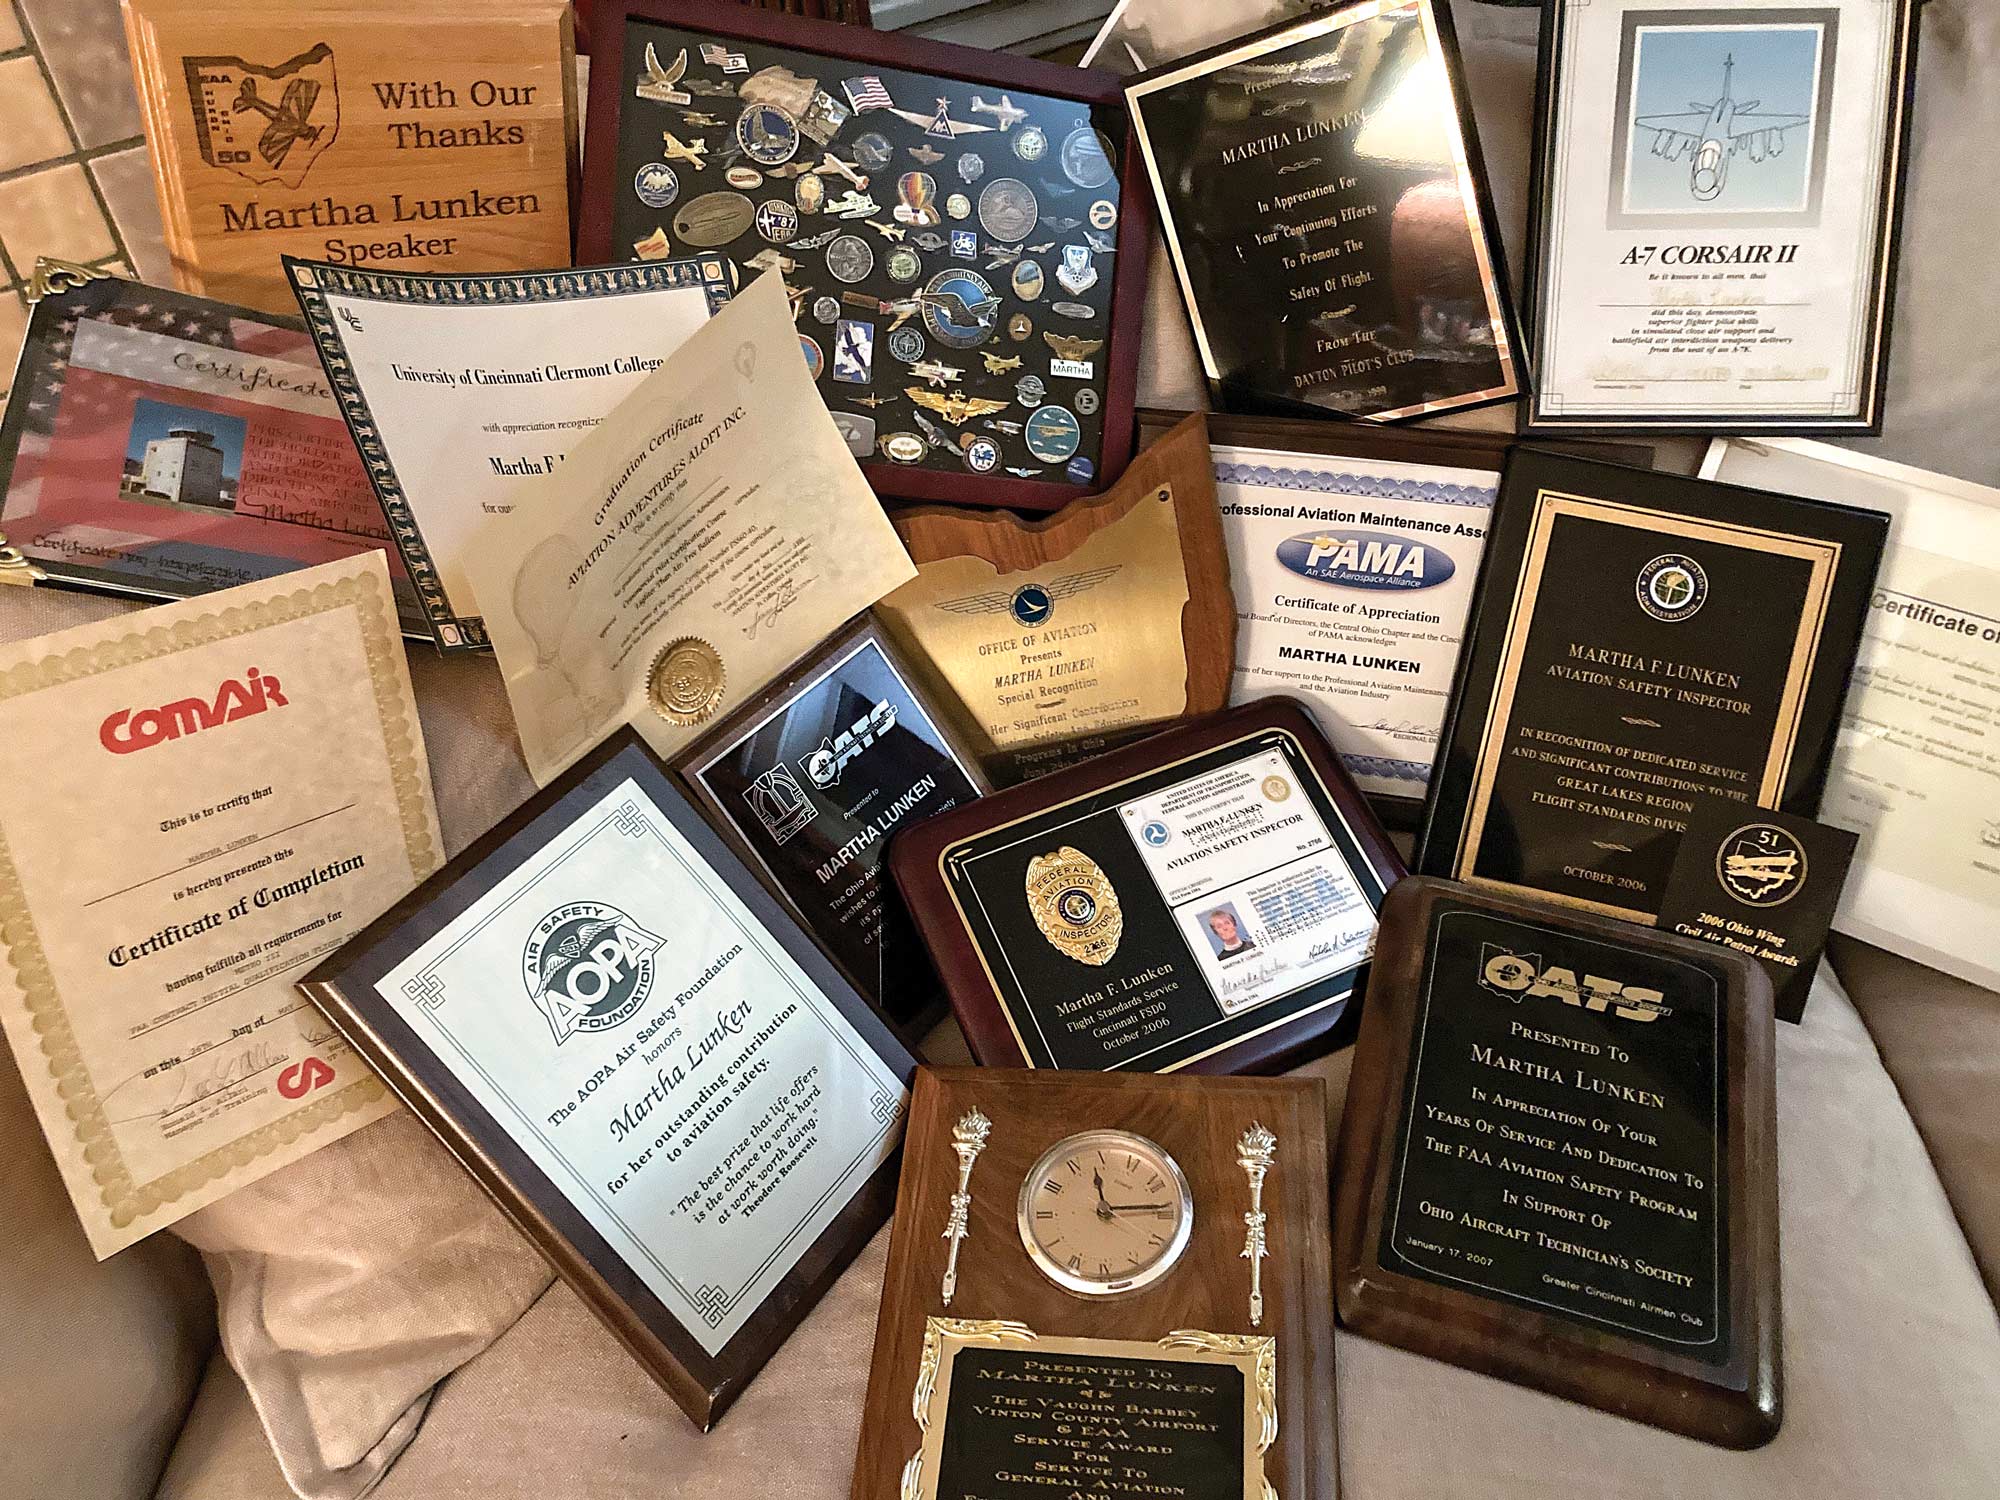 Martha Lunken's awards